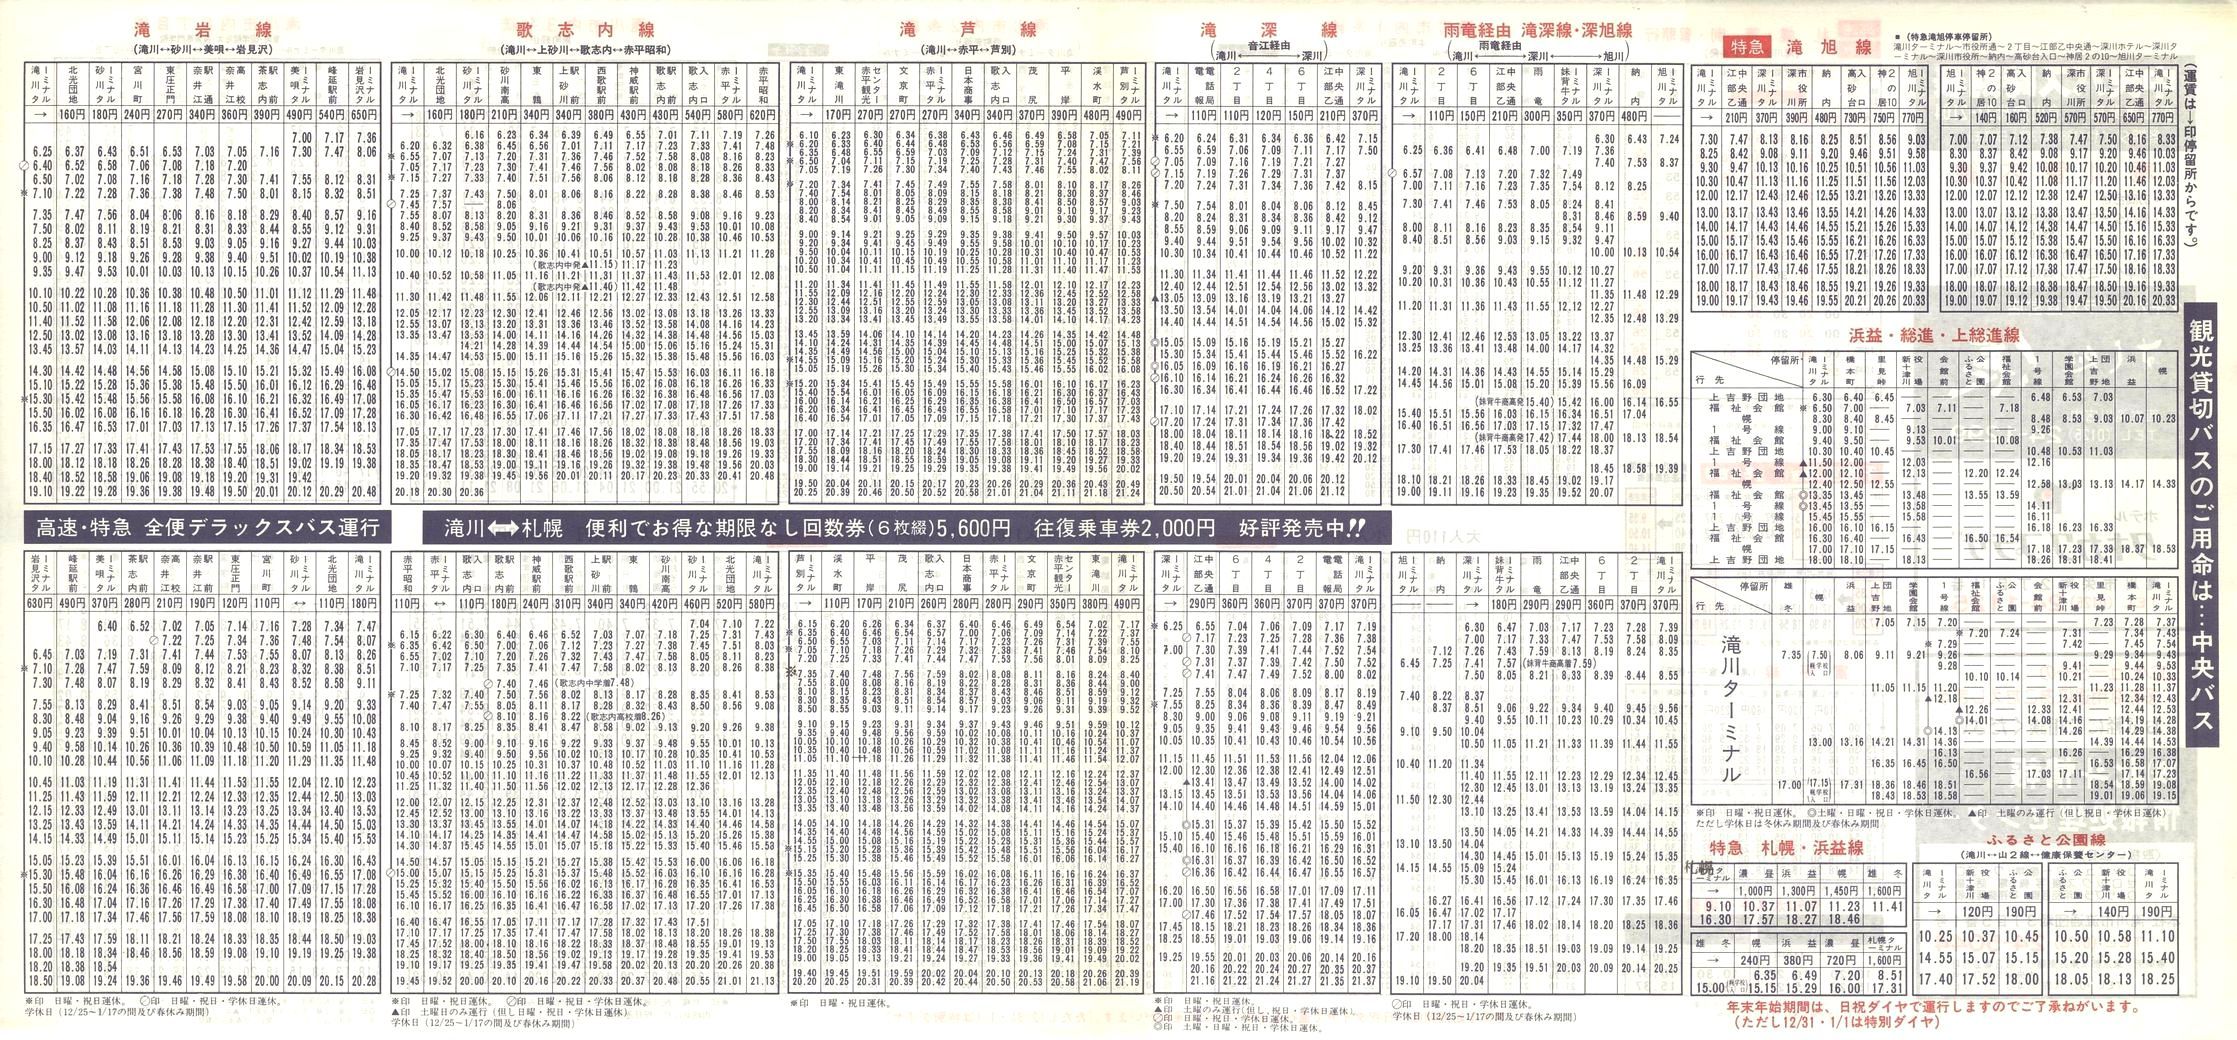 1988-12-01改正_北海道中央バス(空知)_滝川管内線時刻表裏面